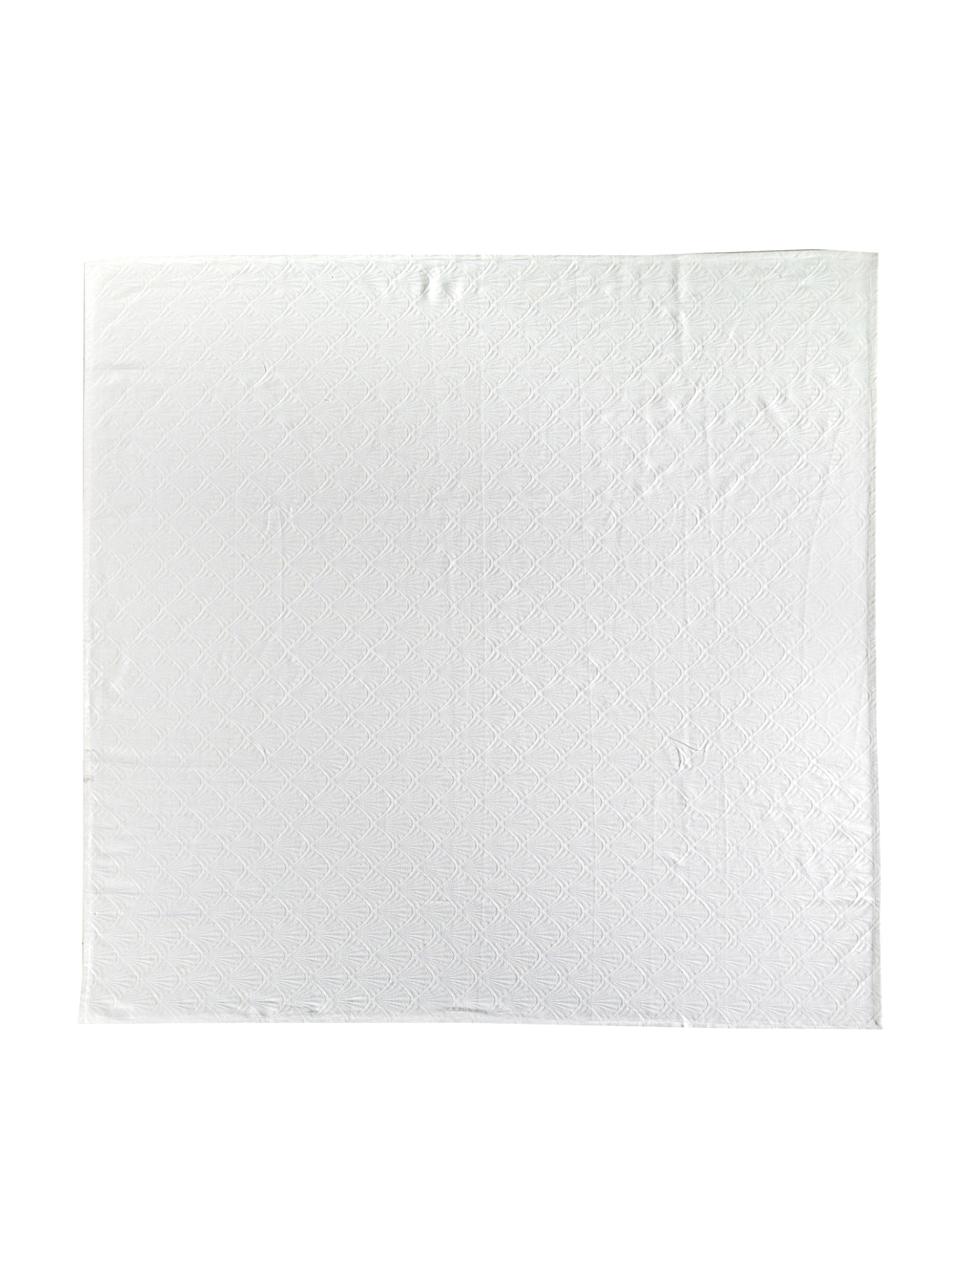 Mantel estampado Celine, Blanco, De 2 a 4 comensales (An 150 x L 150 cm)